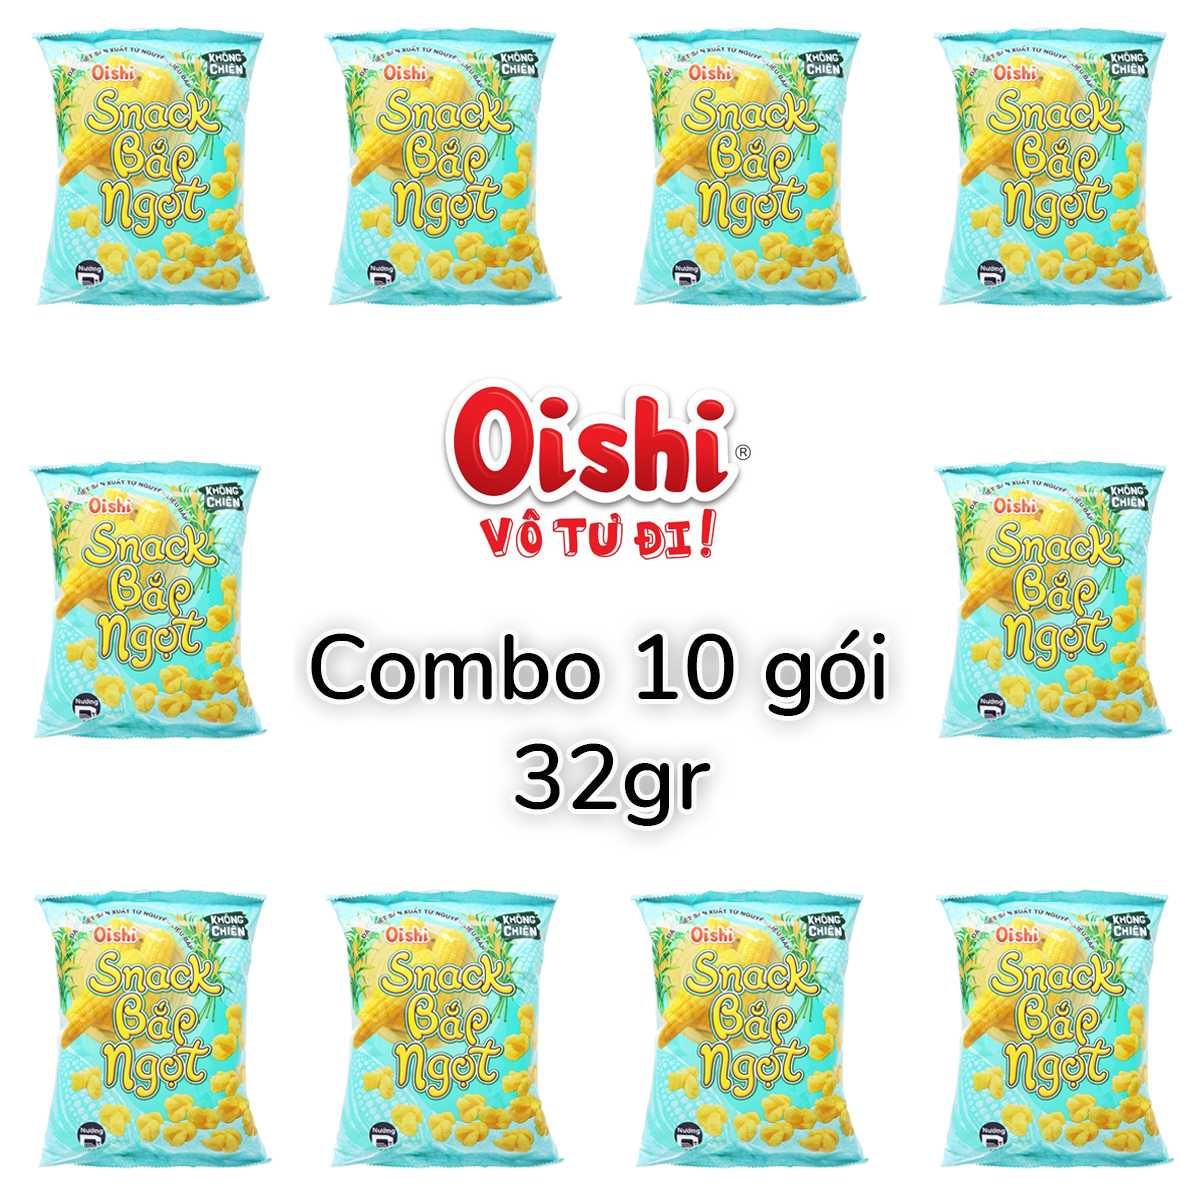 Oishi full set of 32 taste snack roll total combo 32gr